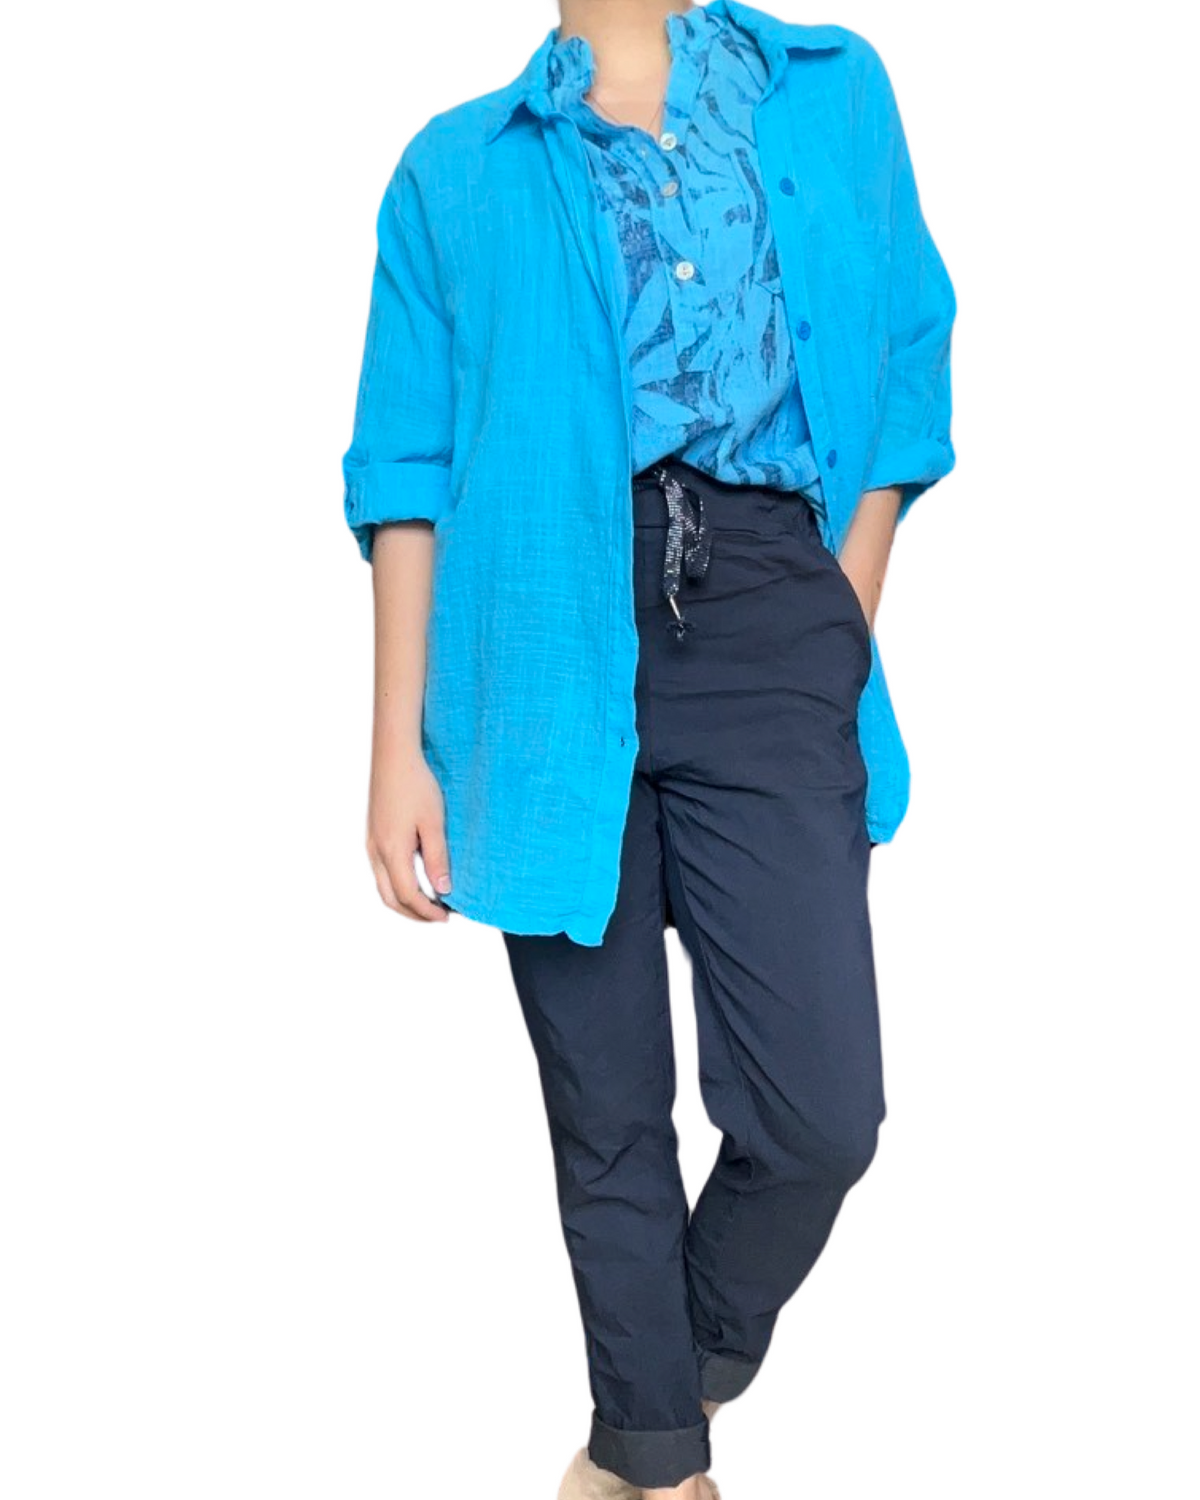 Blouse turquoise pour femme avec imprimé floral abstrait avec surchemise et pantalon.